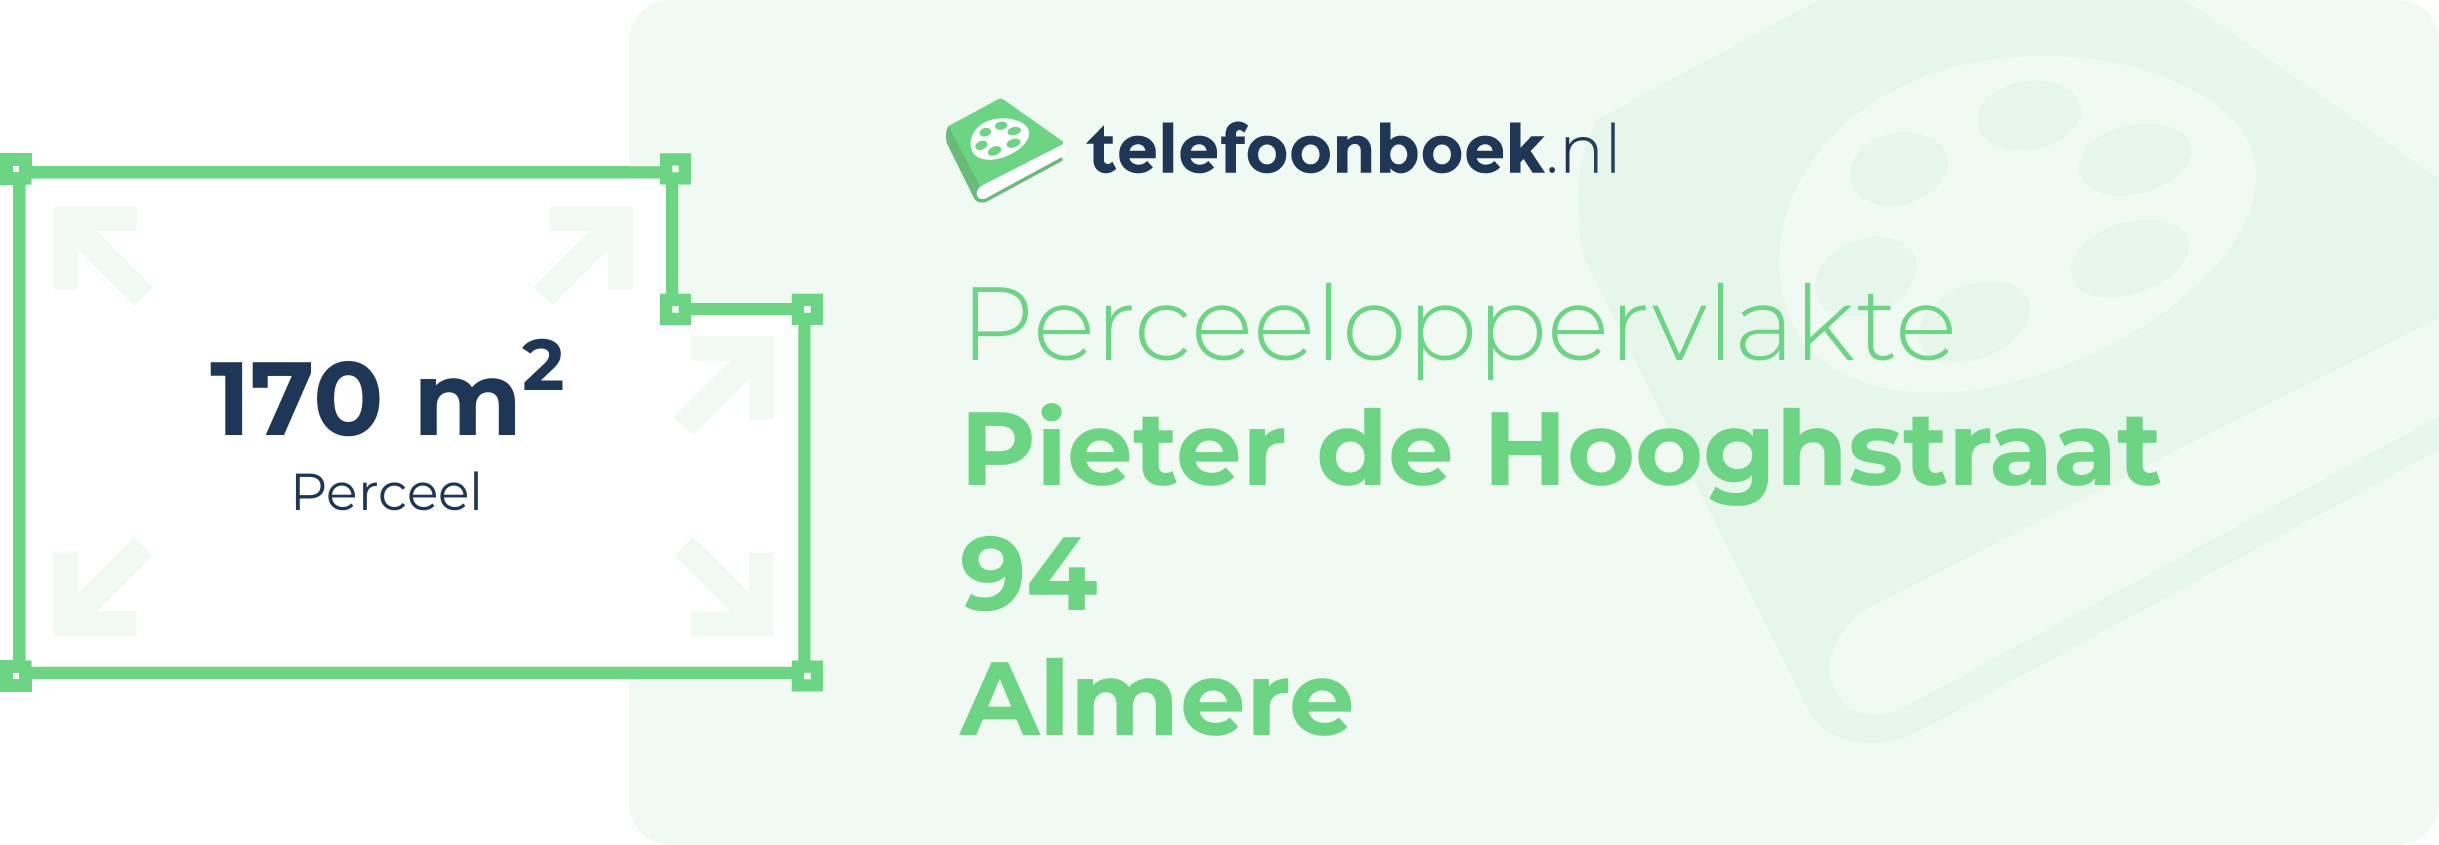 Perceeloppervlakte Pieter De Hooghstraat 94 Almere